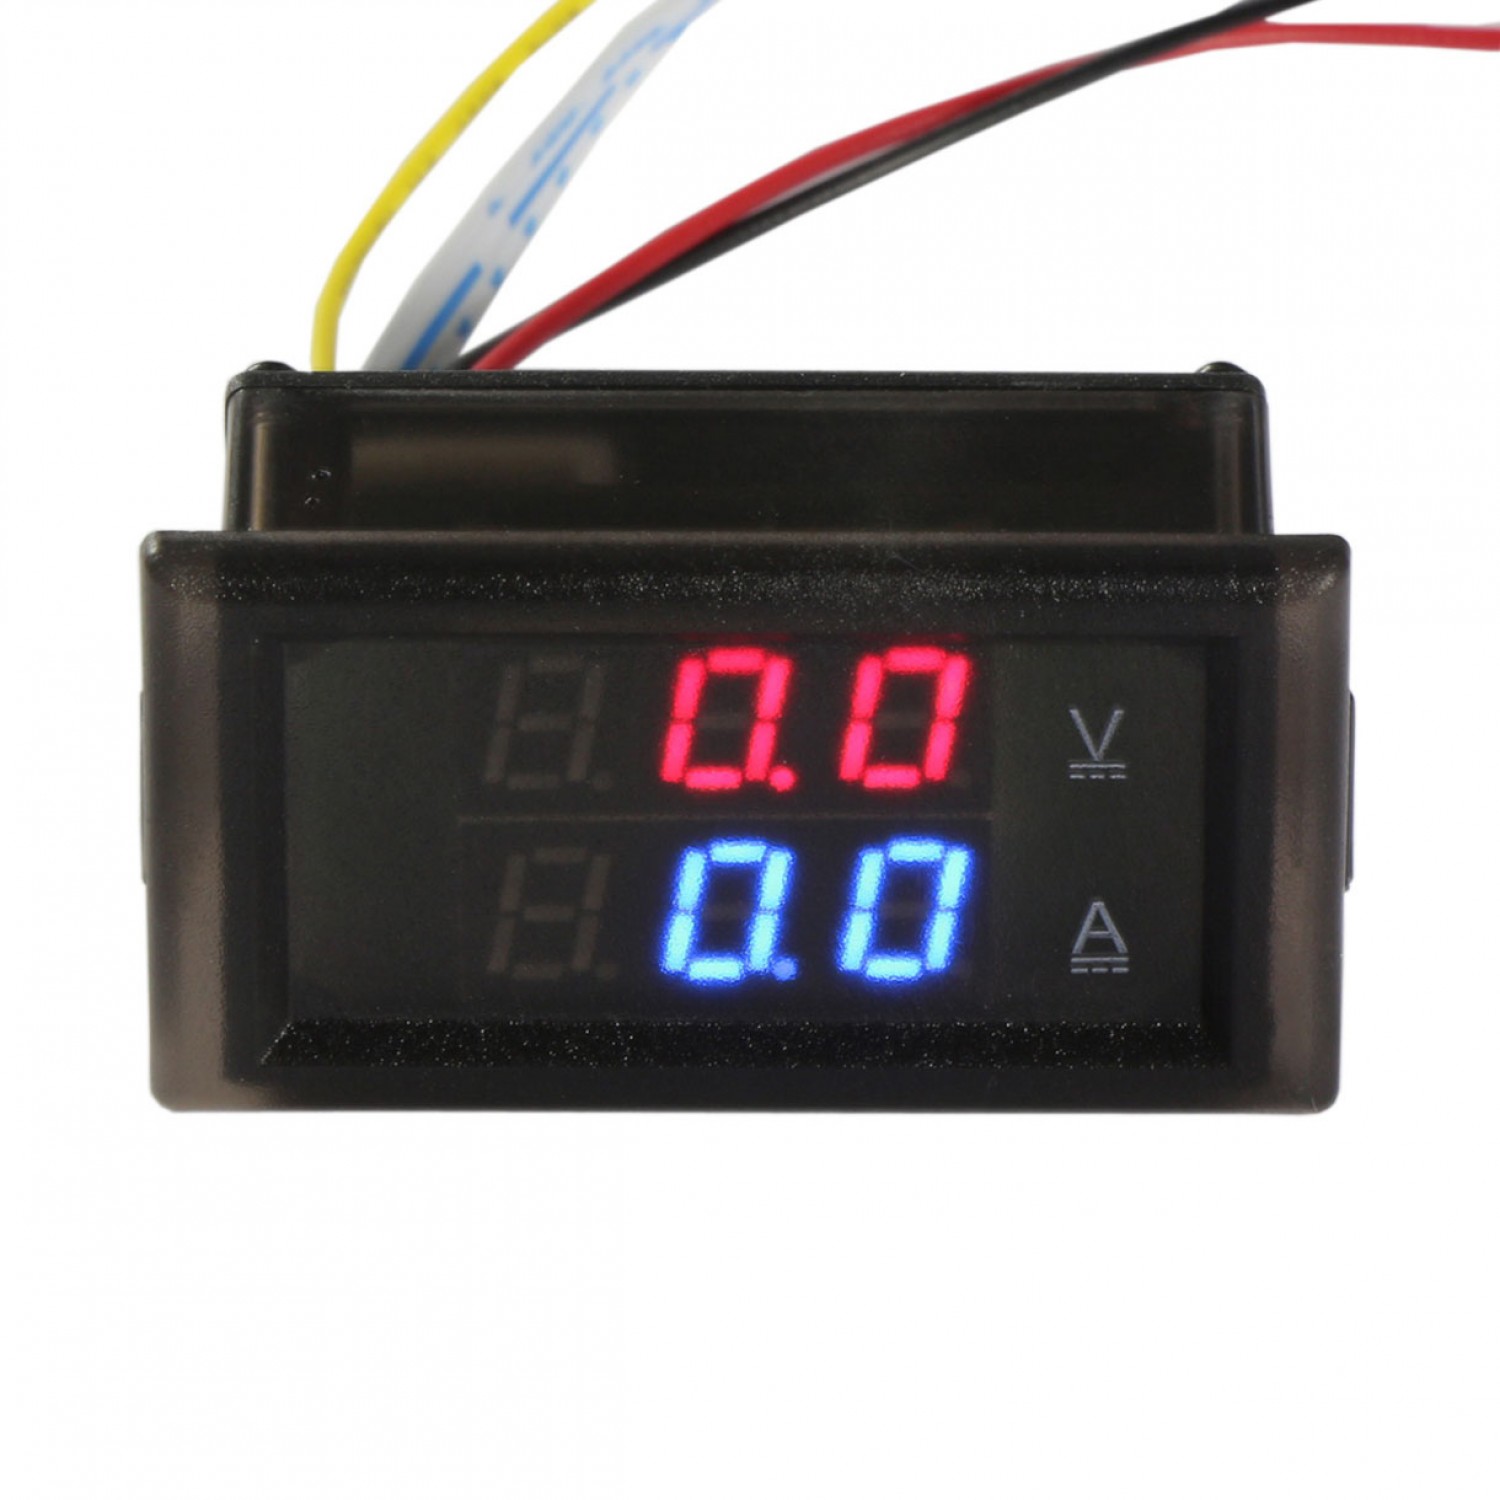 DC 0-300V LED Display Panel Voltmeter Ammeter Digital Volt Amp Meter Tester 50A 